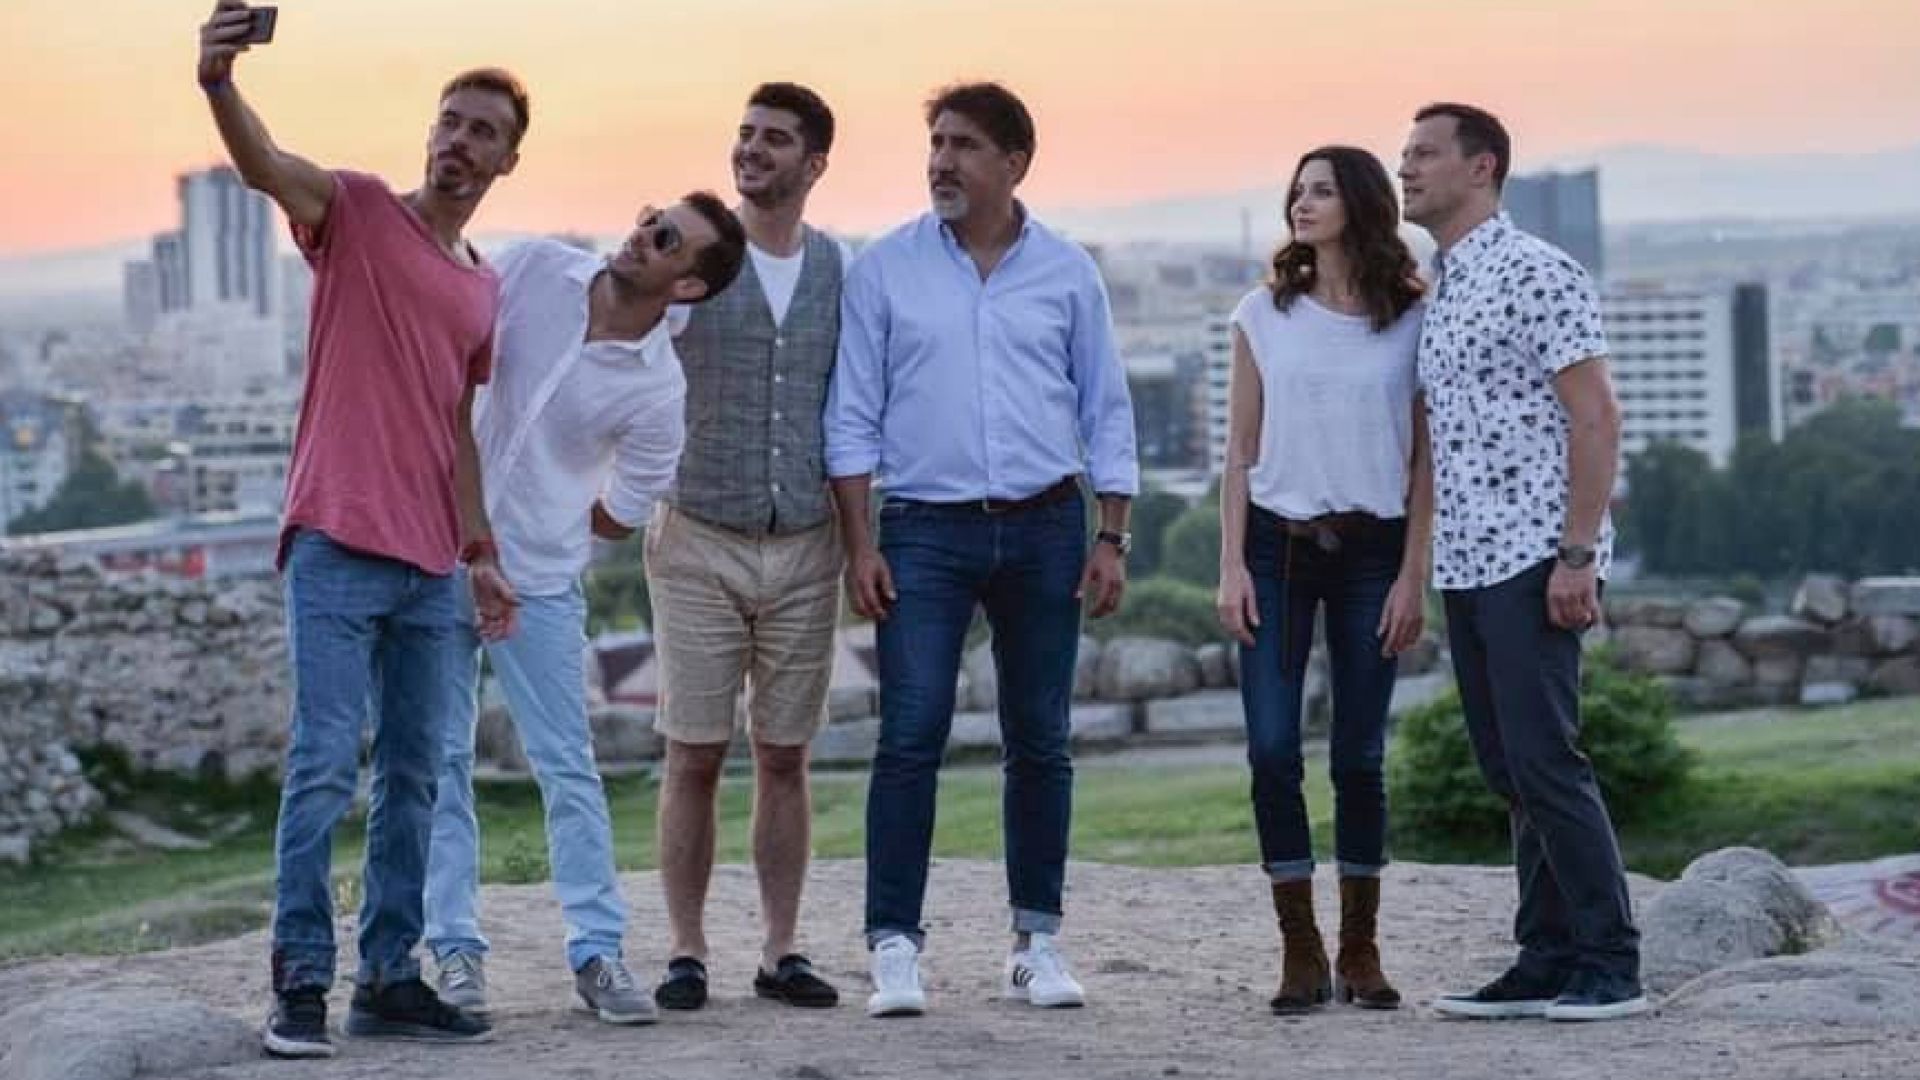 "Завръщане" е най-гледаният български филм за 2019 